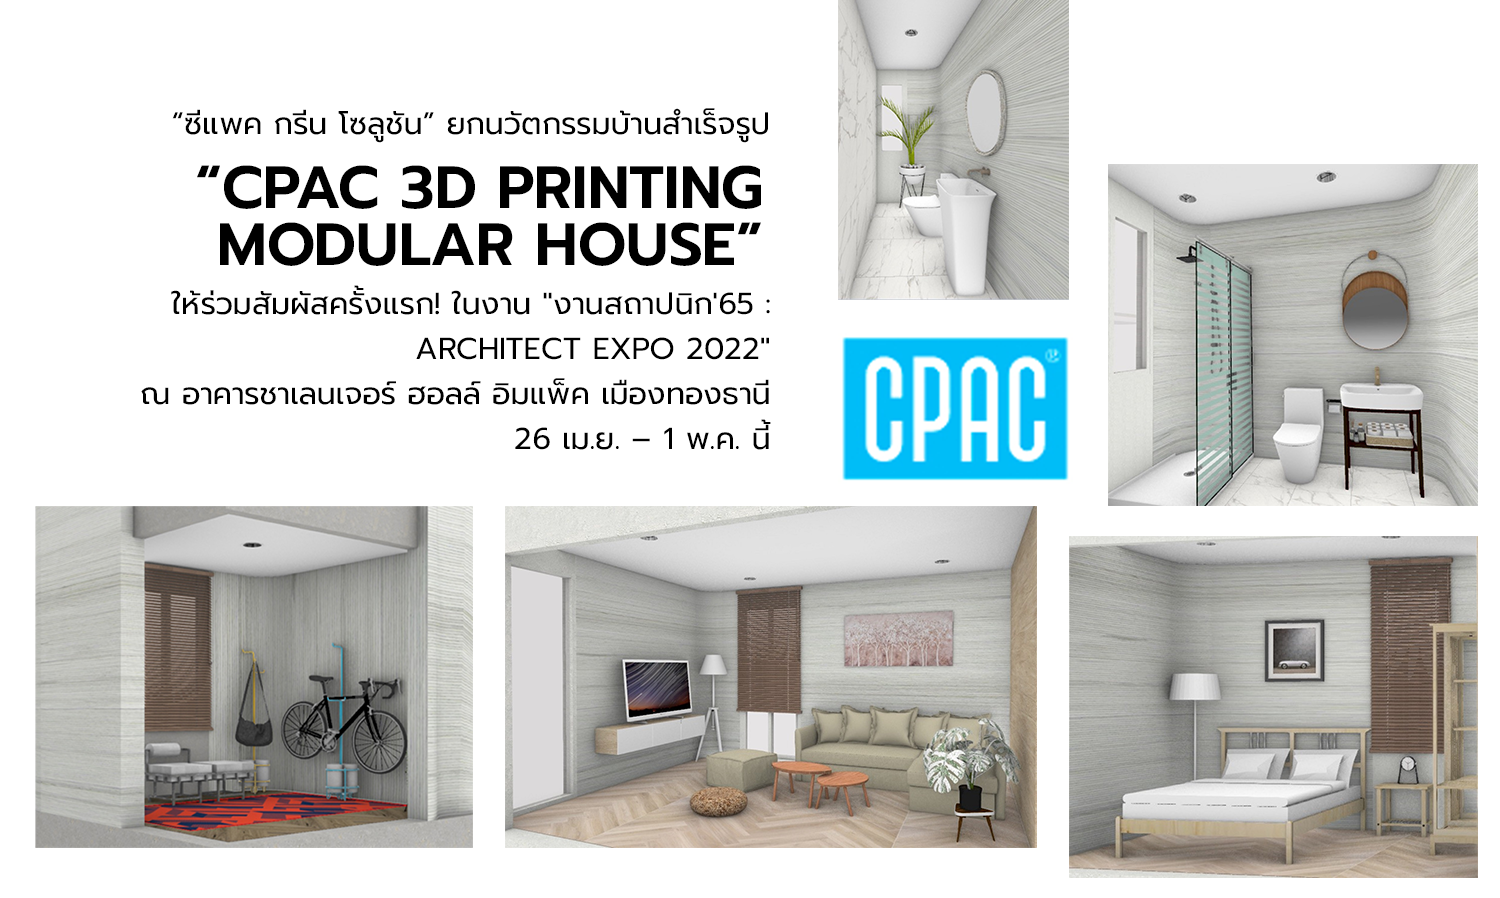 “ซีแพค กรีน โซลูชัน” ยกนวัตกรรมบ้านสำเร็จรูป “CPAC 3D Printing Modular House”ให้ร่วมสัมผัสครั้งแรก! ในงาน 